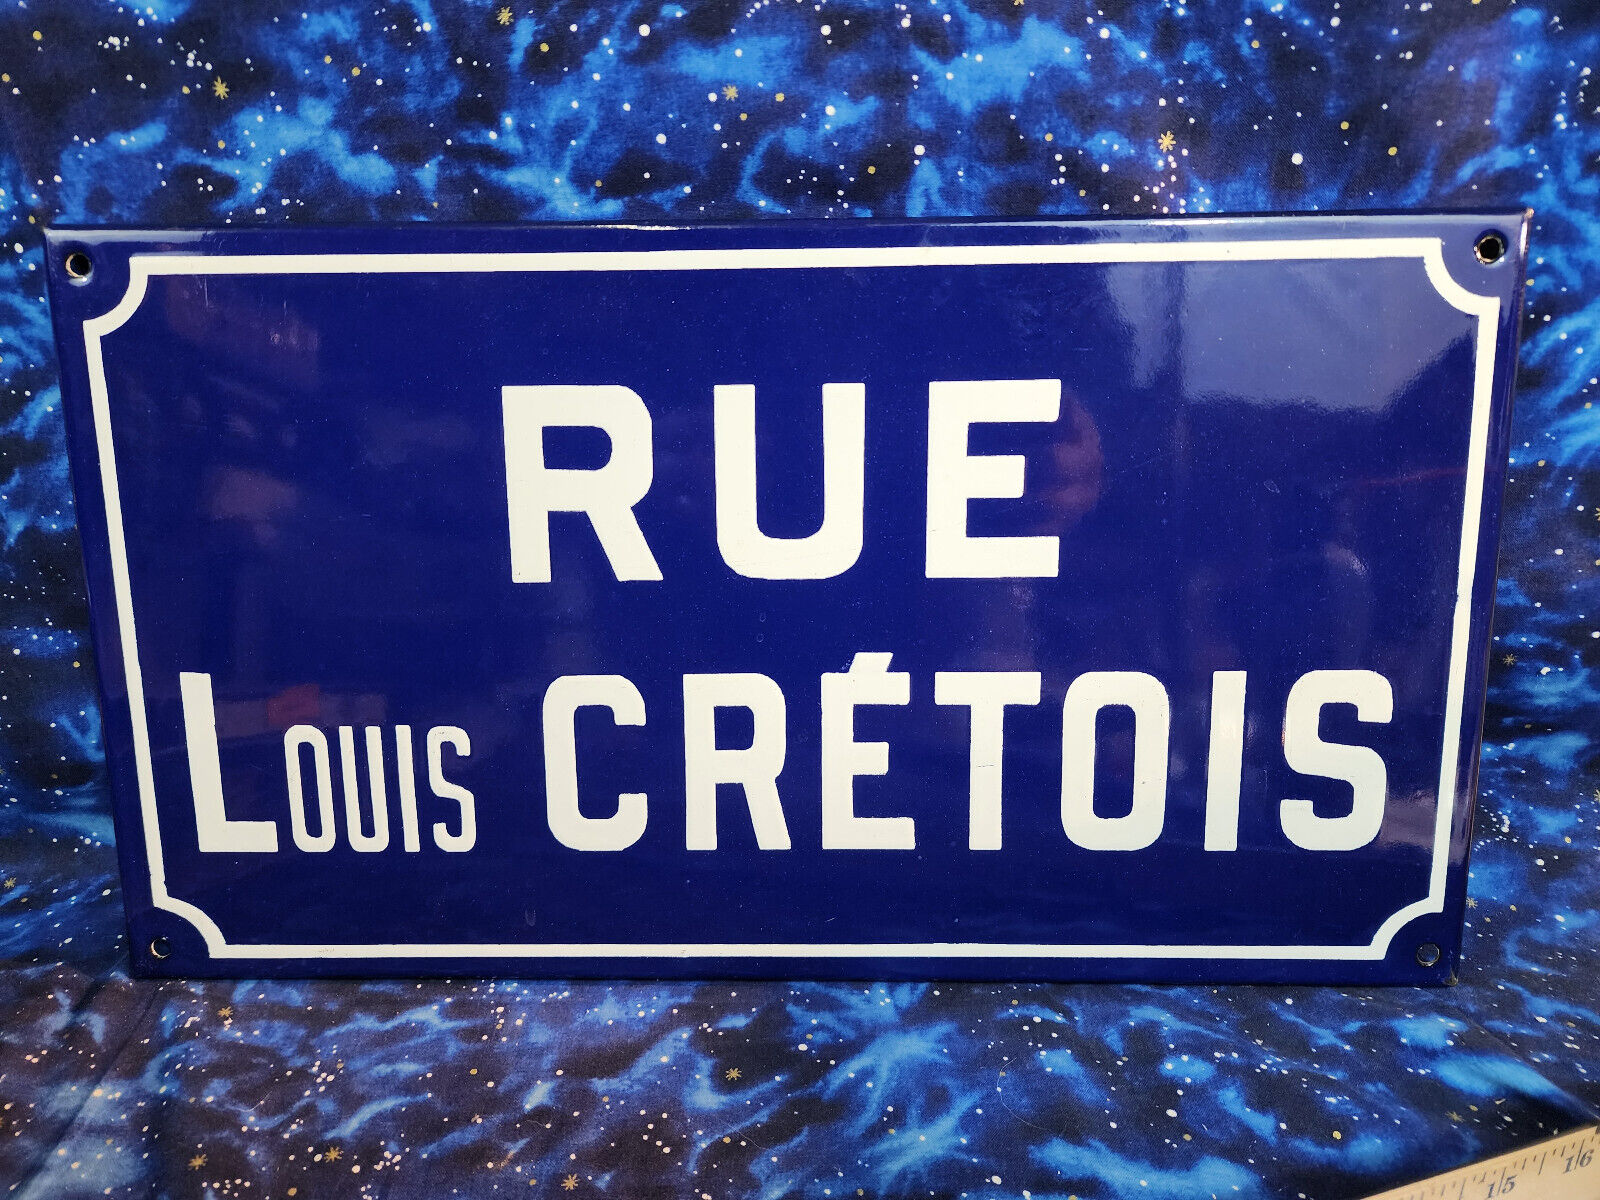 Authentic Antique Enameled Metal Paris Street Sign Rue Louis Cretois